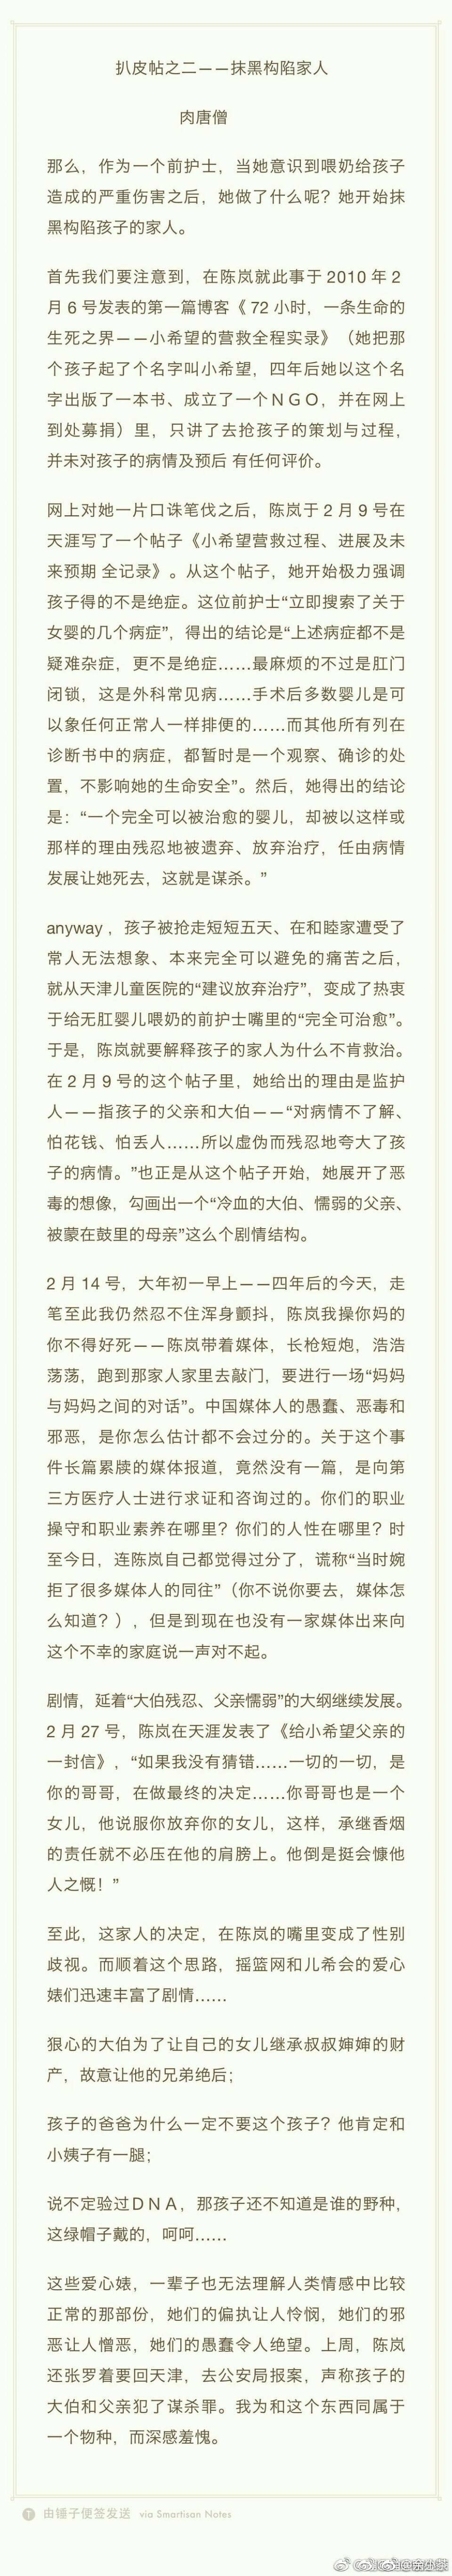 再发一次肉唐僧当年写陈岚迫害天津无肛婴儿父母的文章。